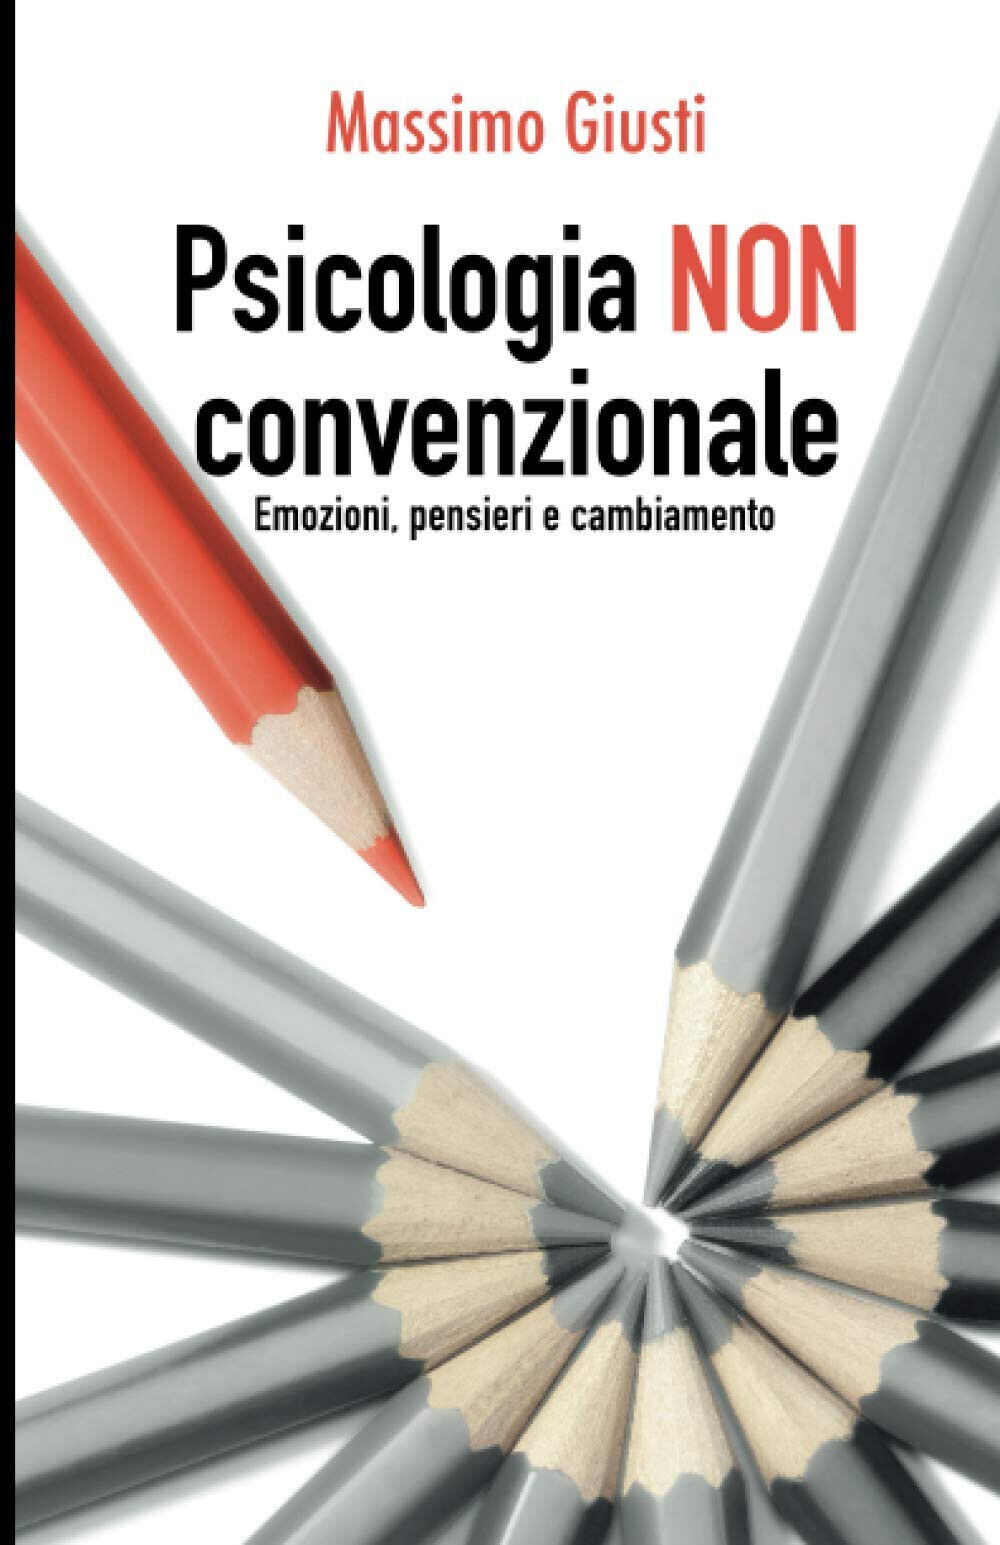 Psicologia NON Convenzionale - Massimo Giusti - Autopubblicato, 2021